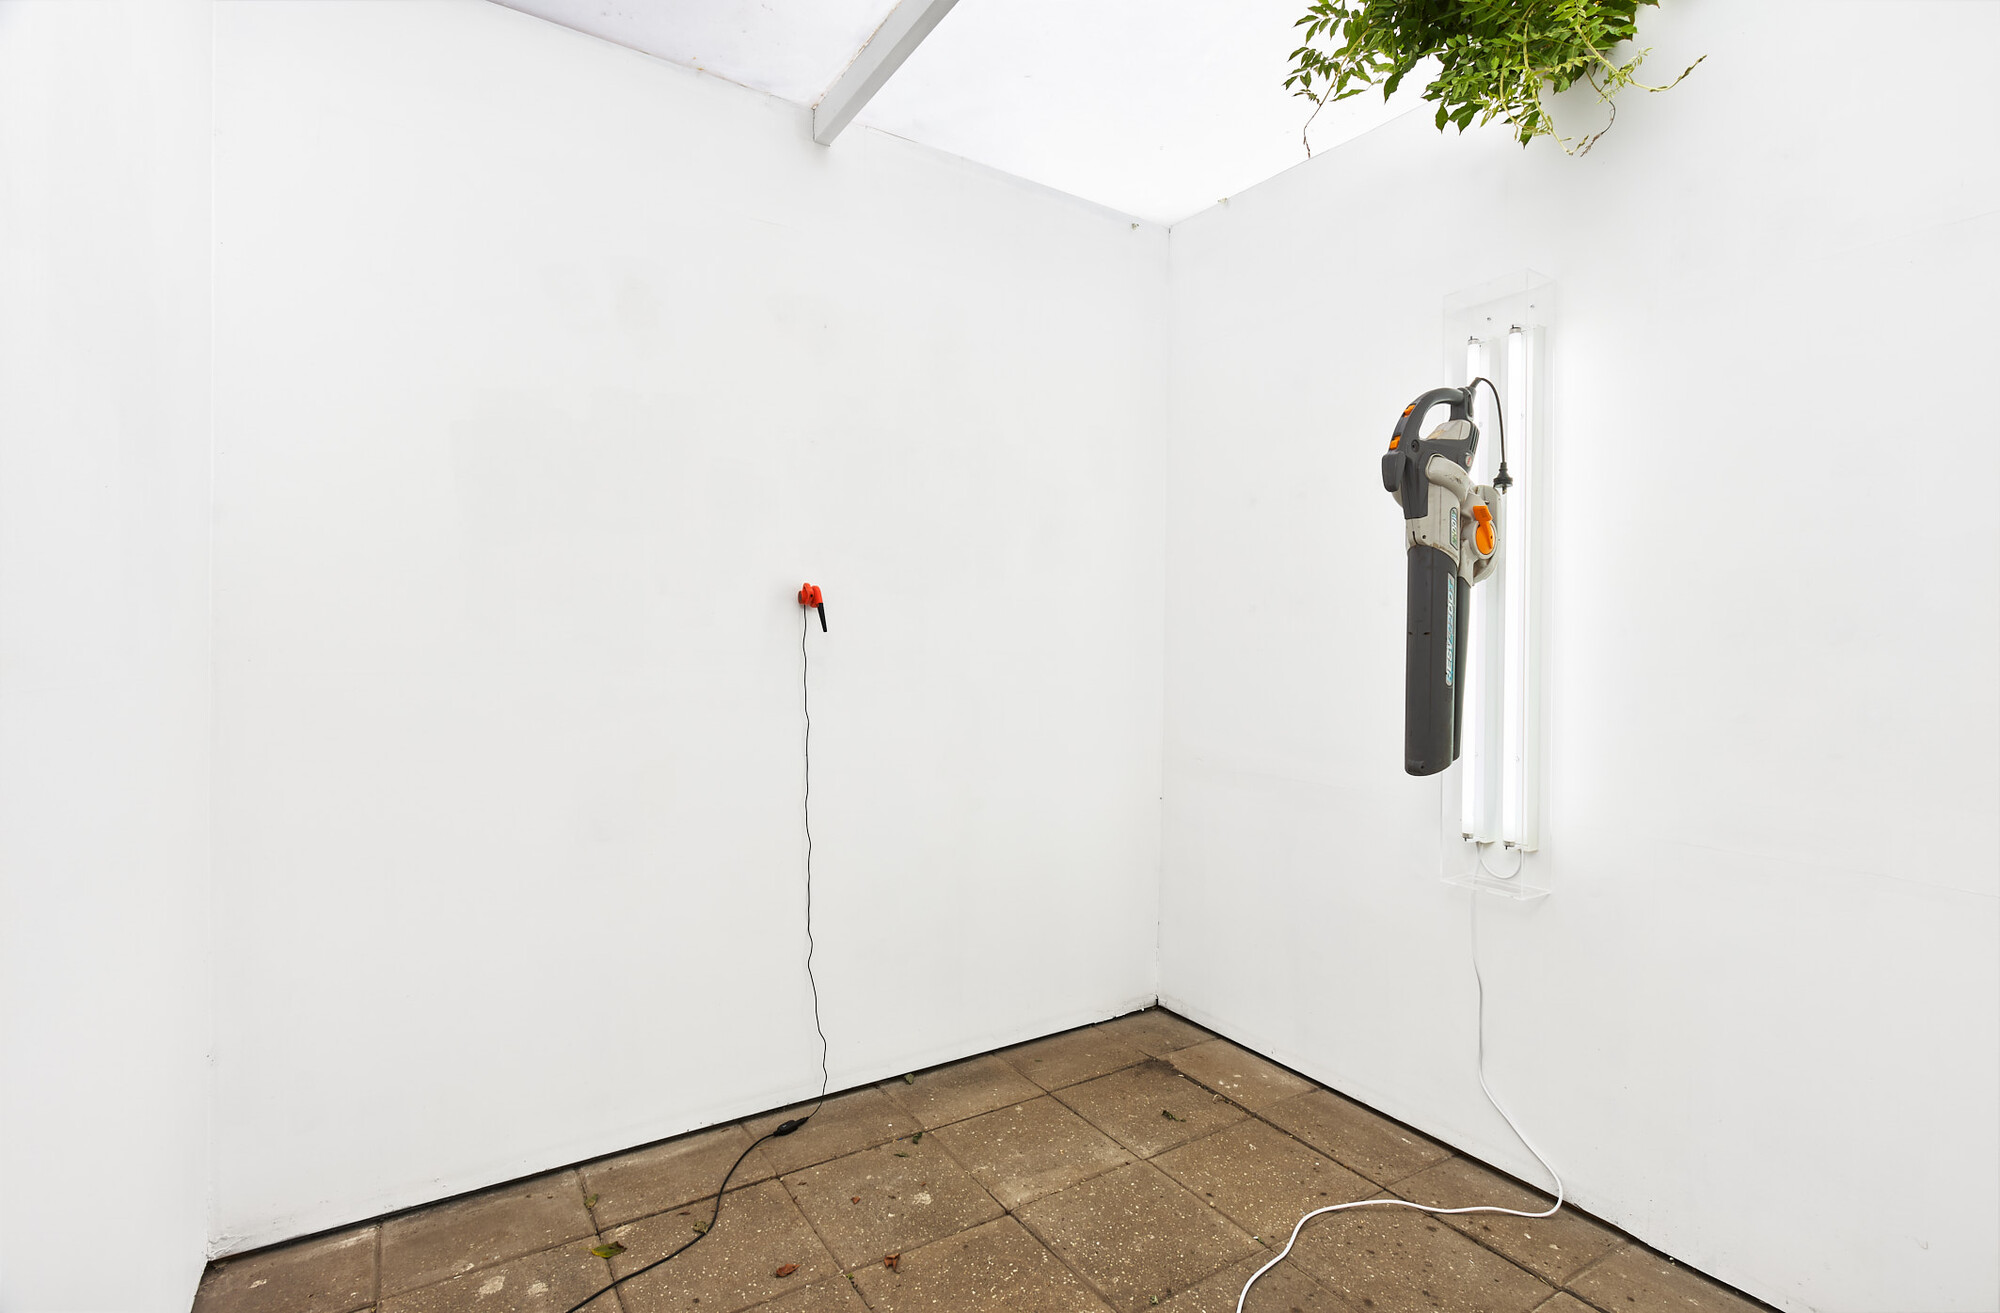 Installation view of Dust Blaster, Savage Garden, 2022. Photo: Christo Crocker